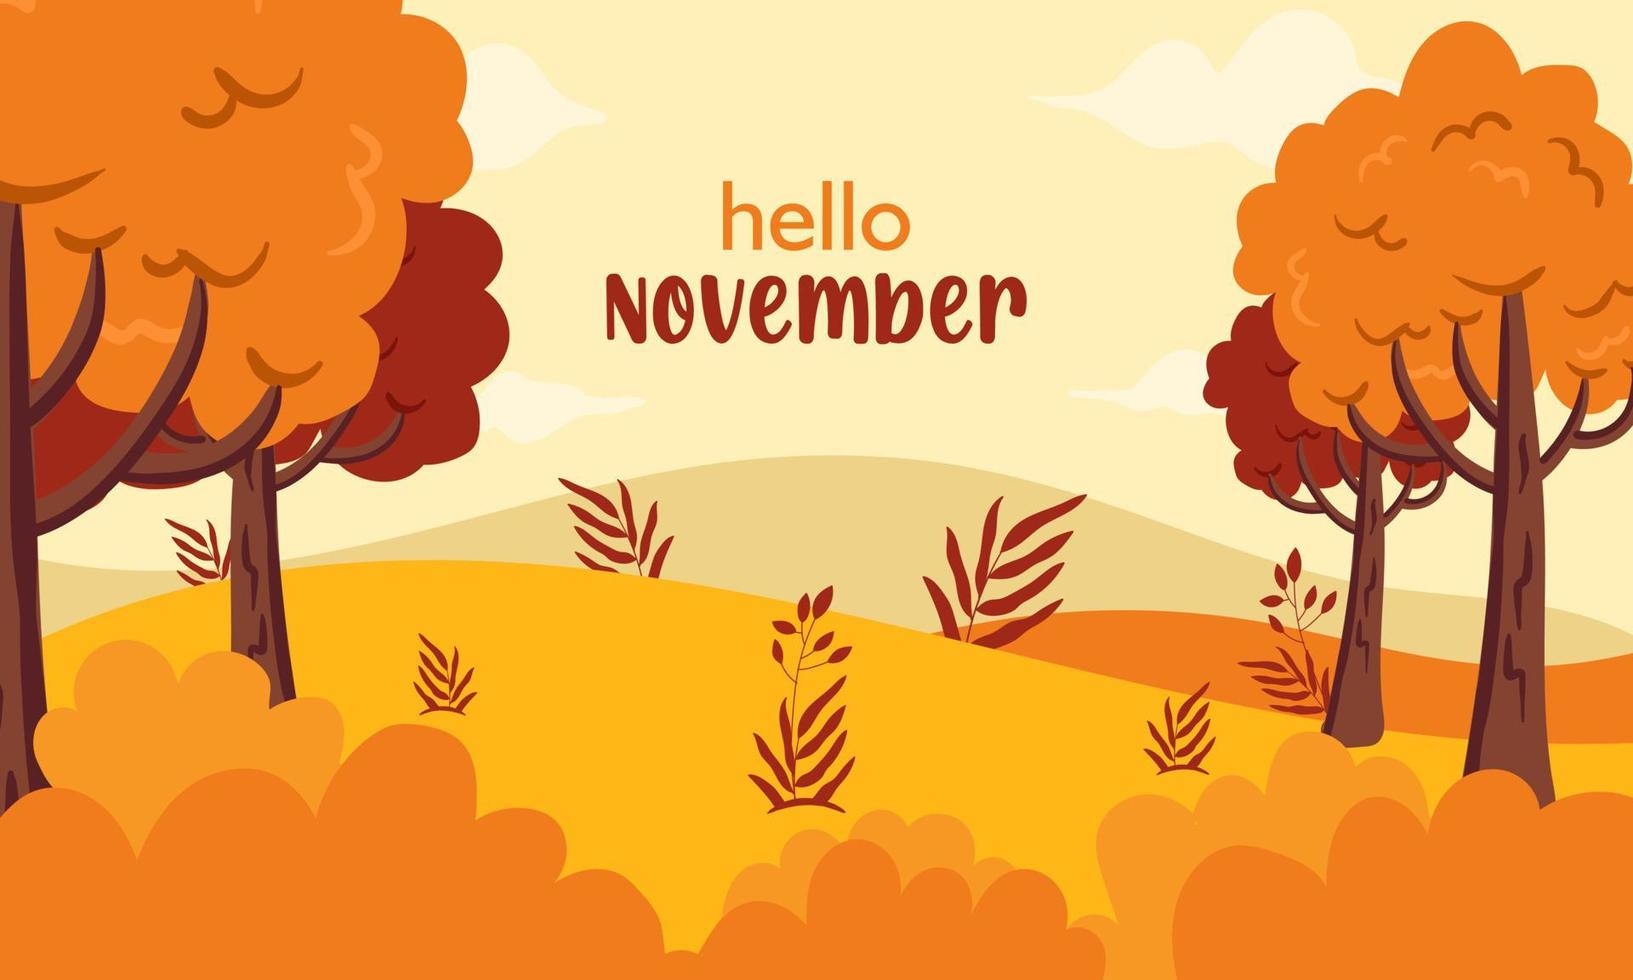 hallo herbstgrußfahne november mit fallbäumen und landschaftsillustrationshintergrund vektor